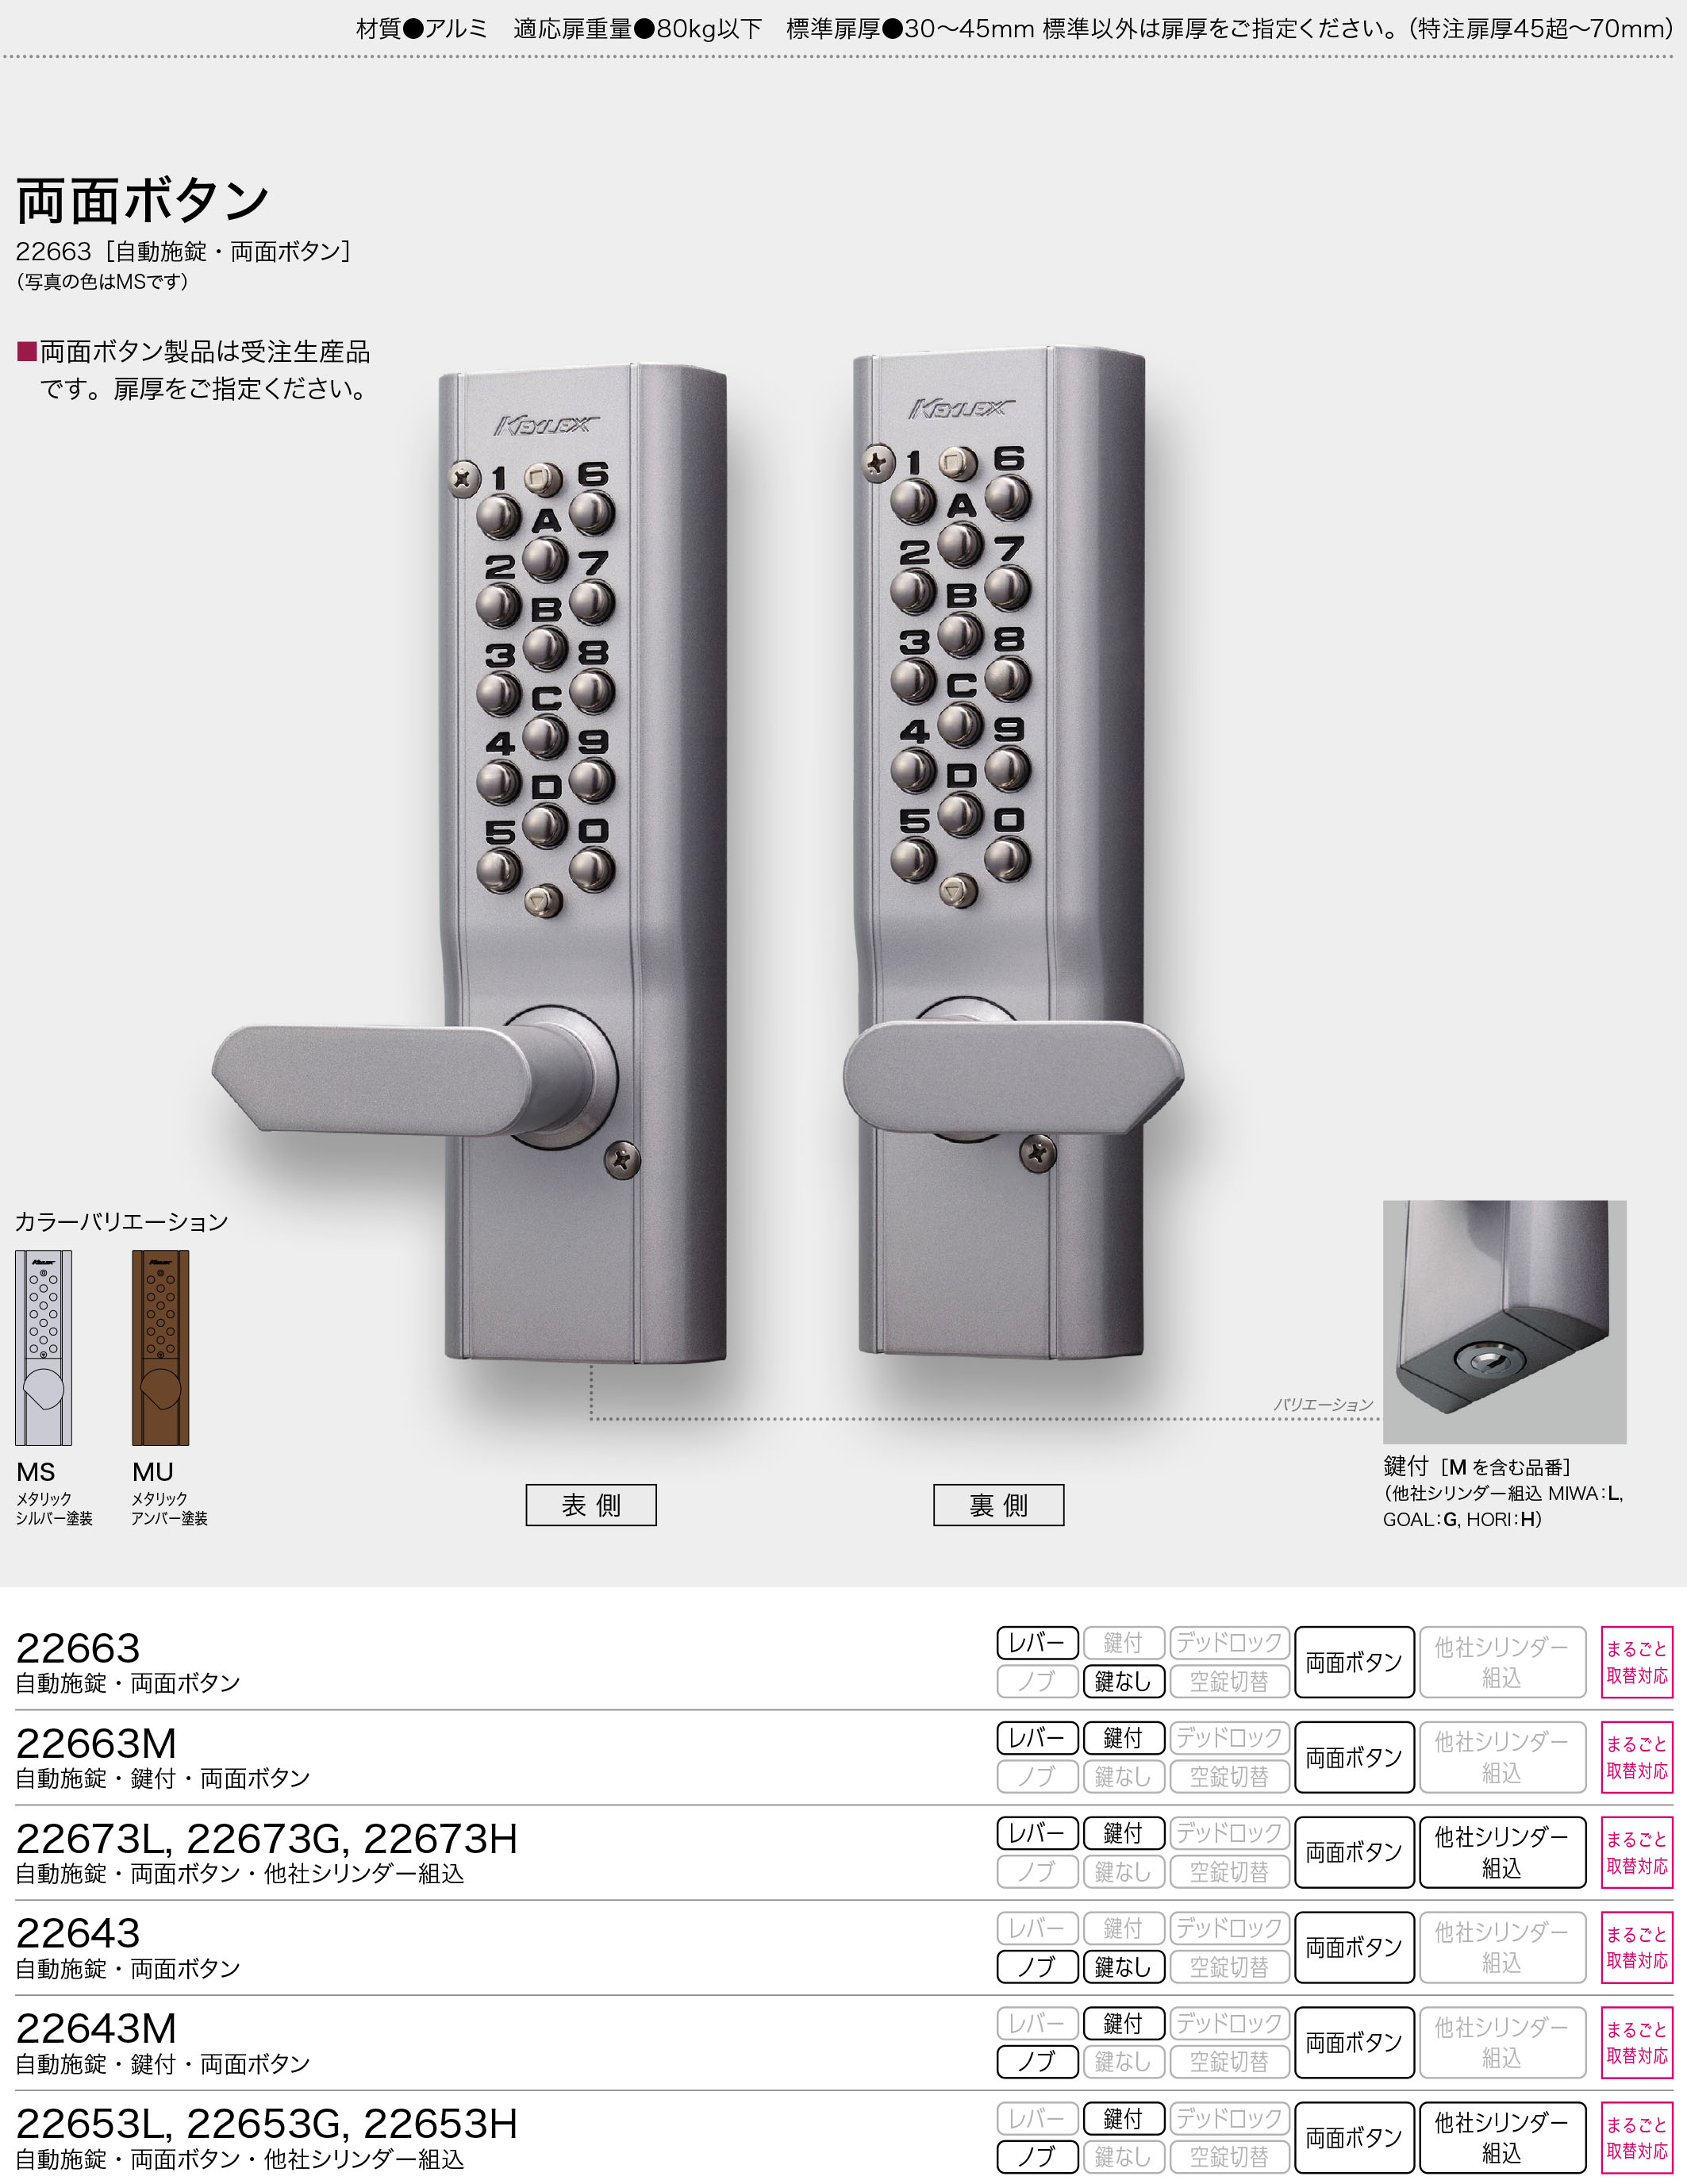 キーレックス 長沢製作所 Nagasawa Keylex500 框扉対応玉座取替錠 縦横の販売